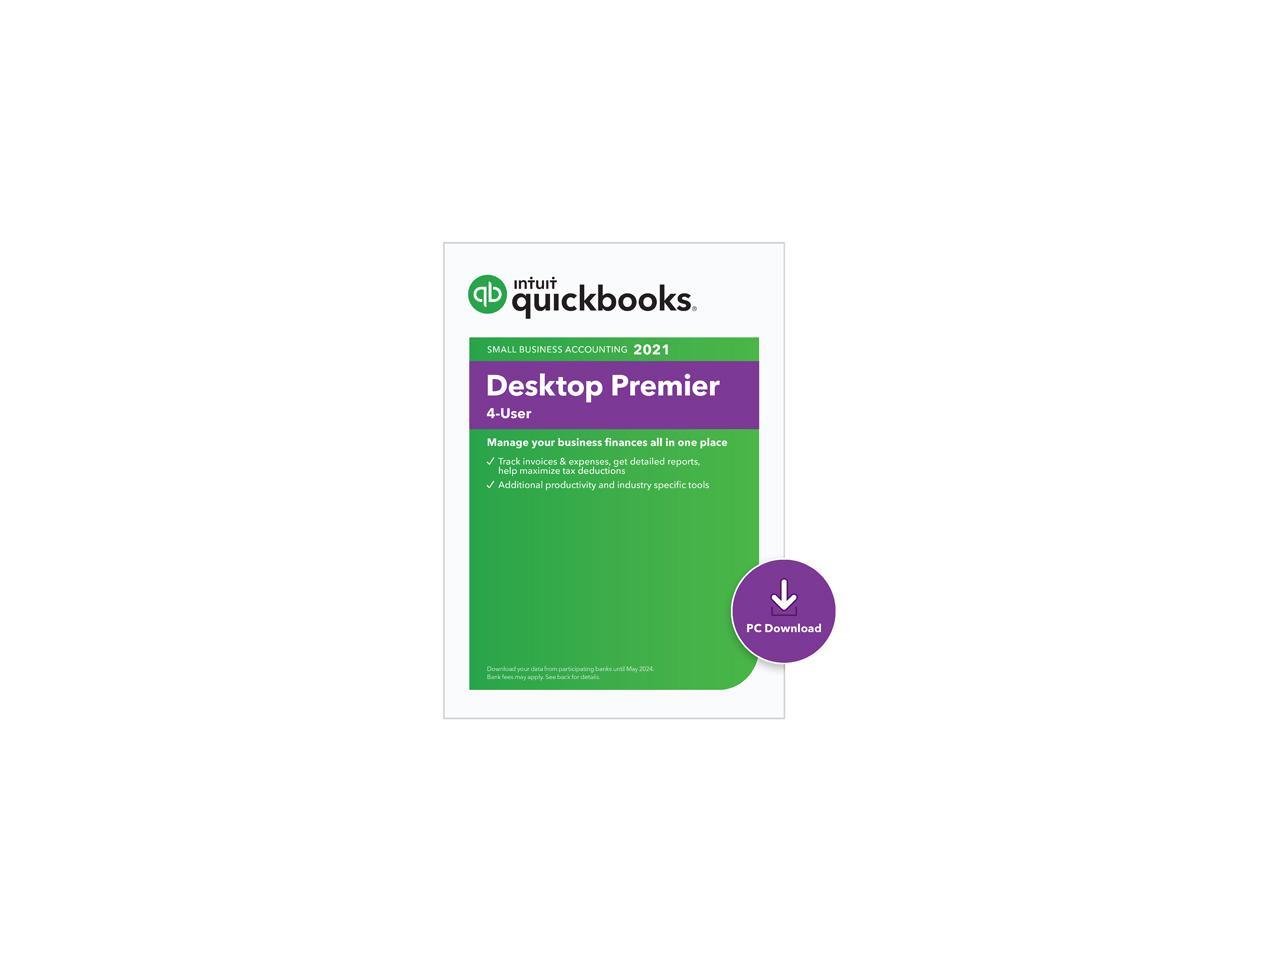 Quickbooks desktop premier contractor edition 2021 kopkorean